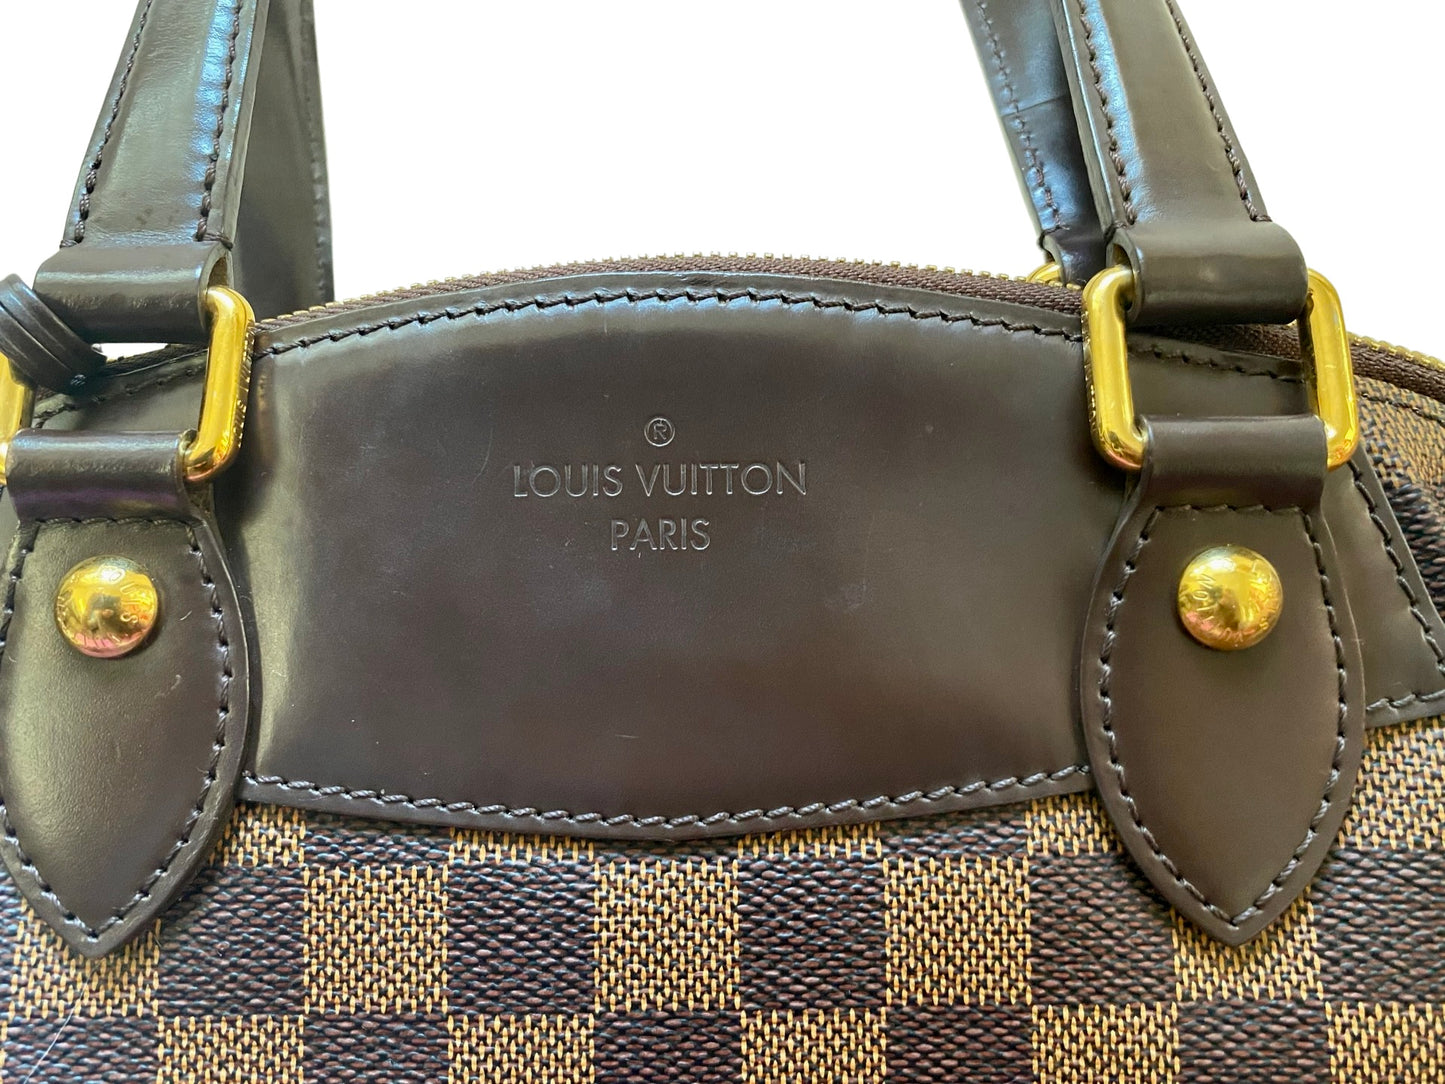 Louis Vuitton Verona PM